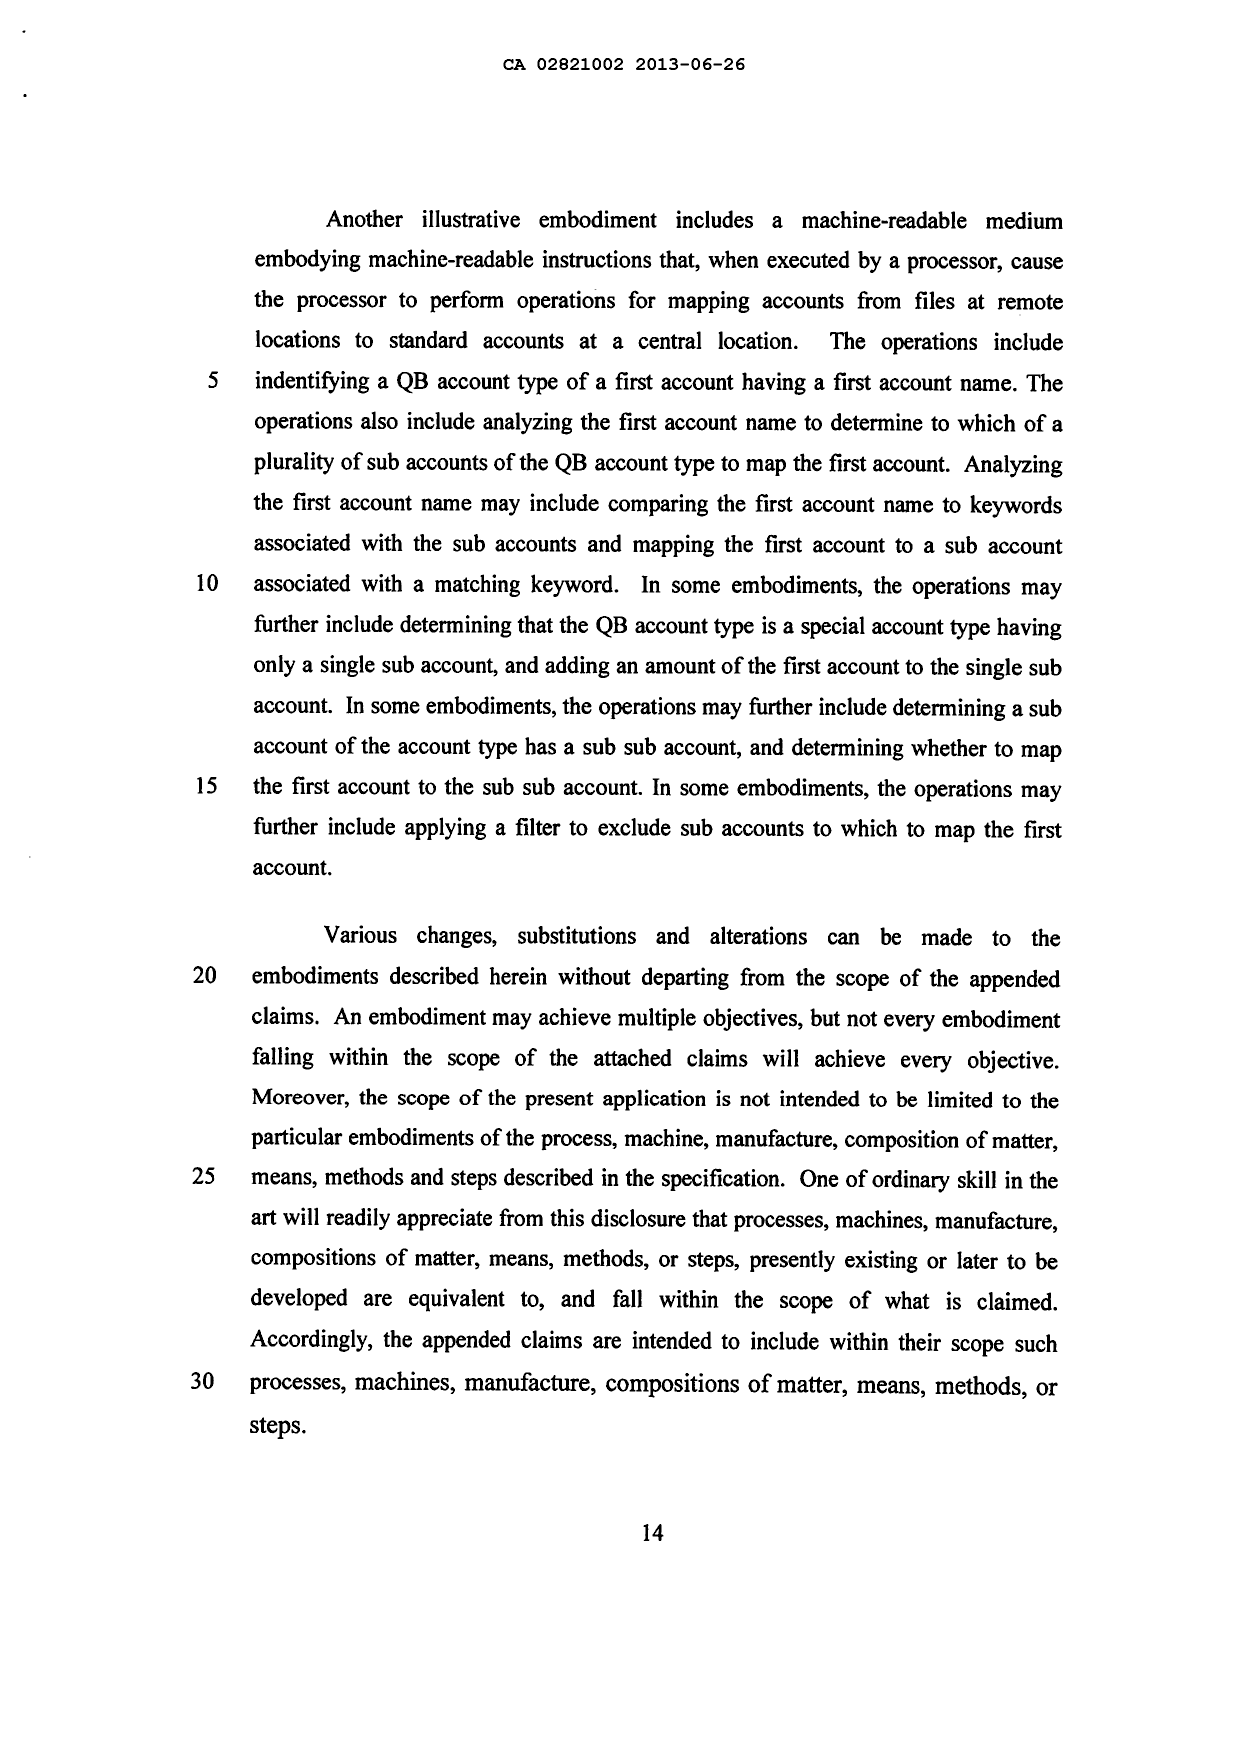 Canadian Patent Document 2821002. Description 20121226. Image 14 of 14